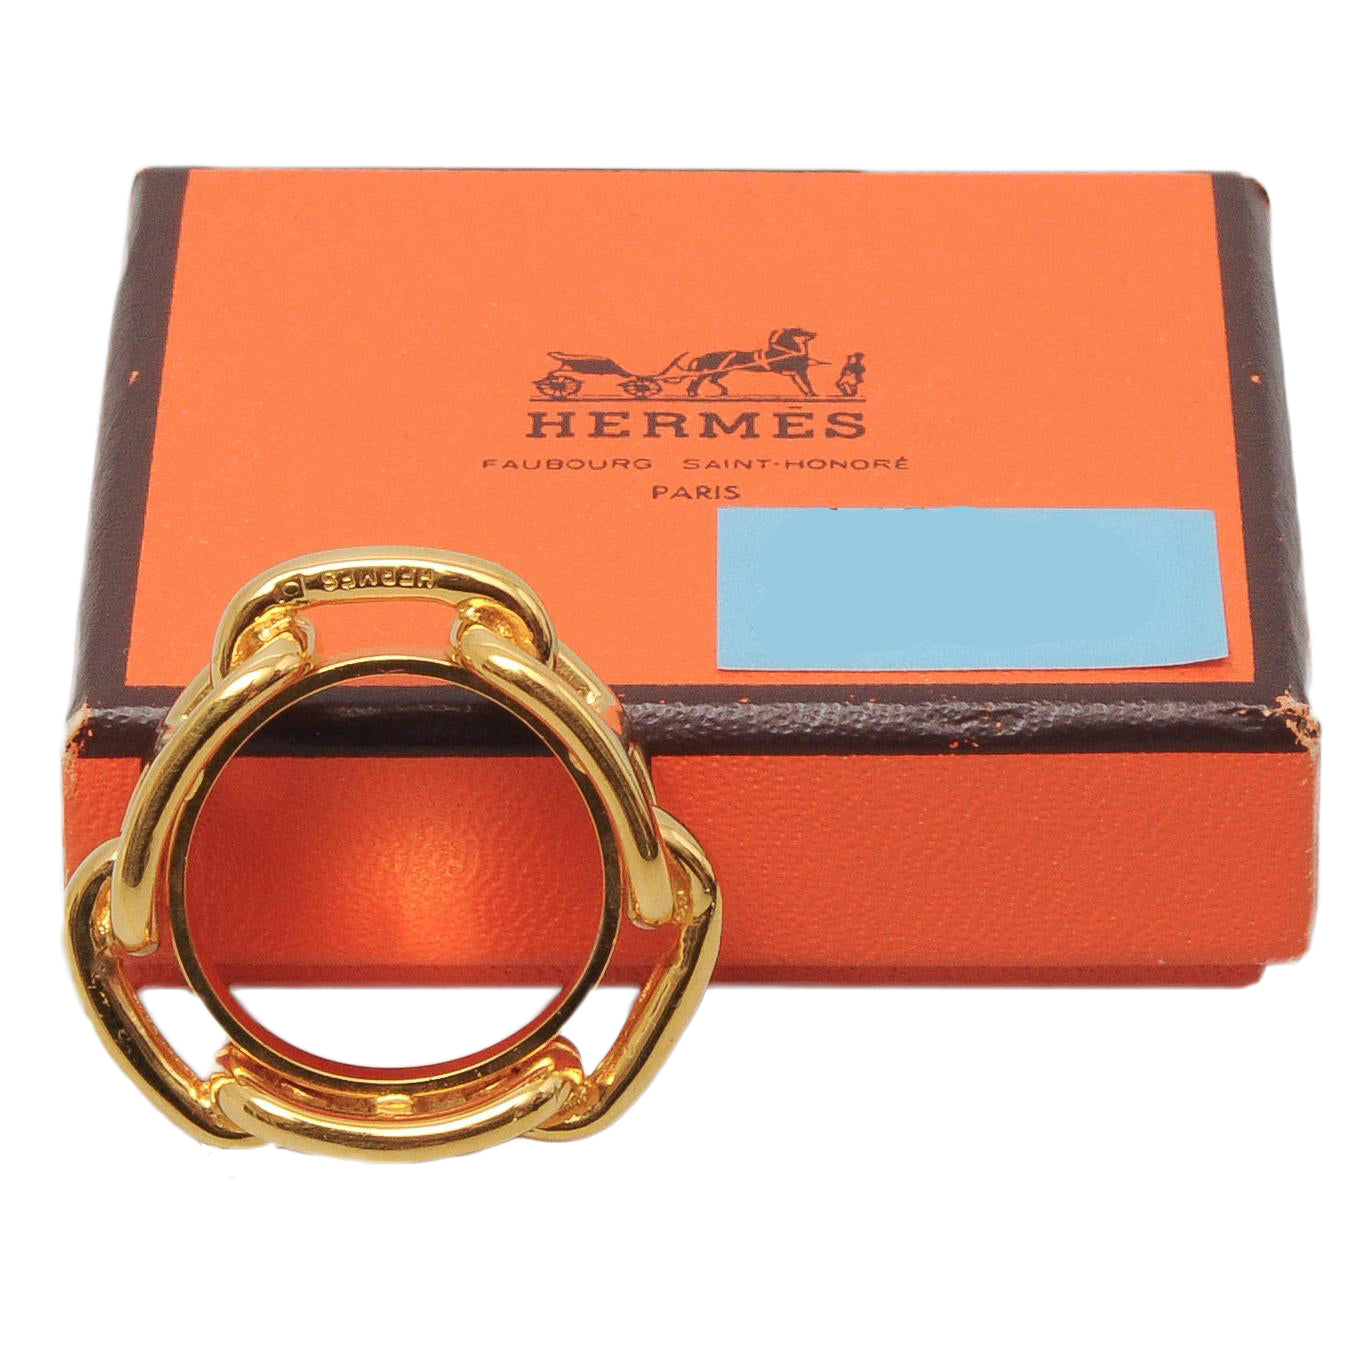 Vintage Hermes Regate Gold Scarf Ring